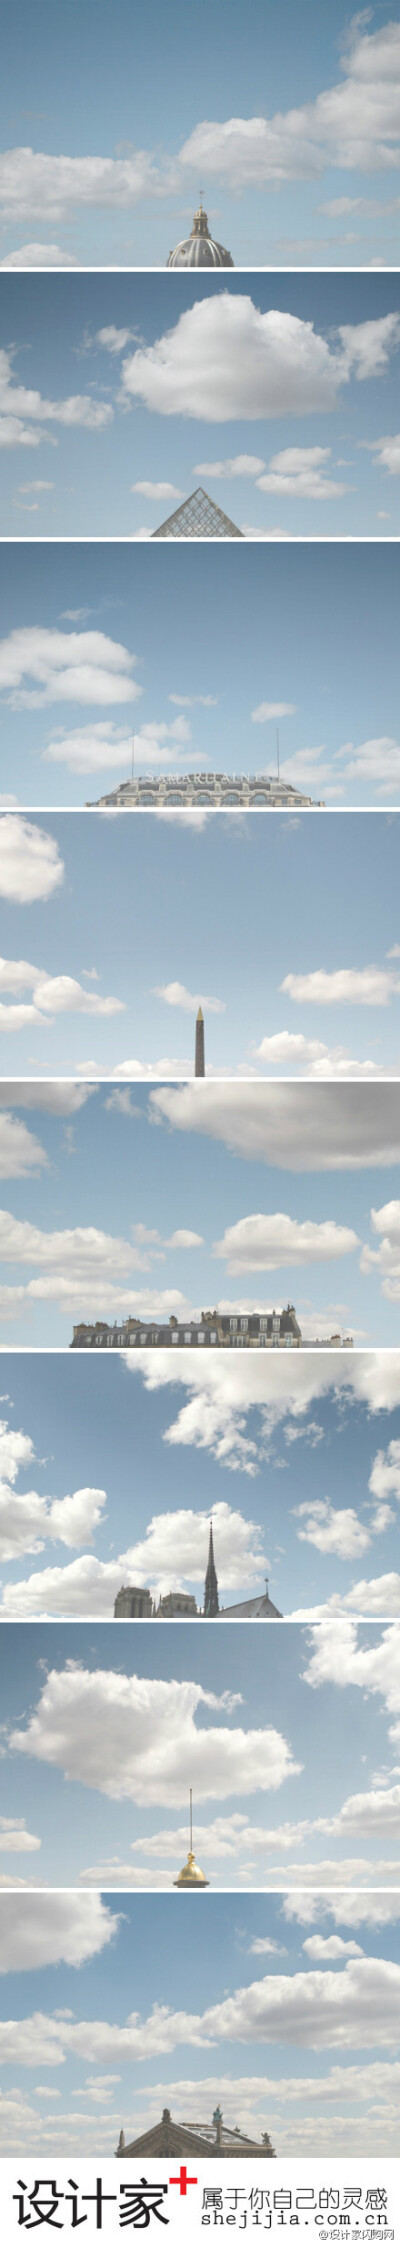 建筑与天空的浪漫比例《Head in the Cloud》by Kattilin Rebesco